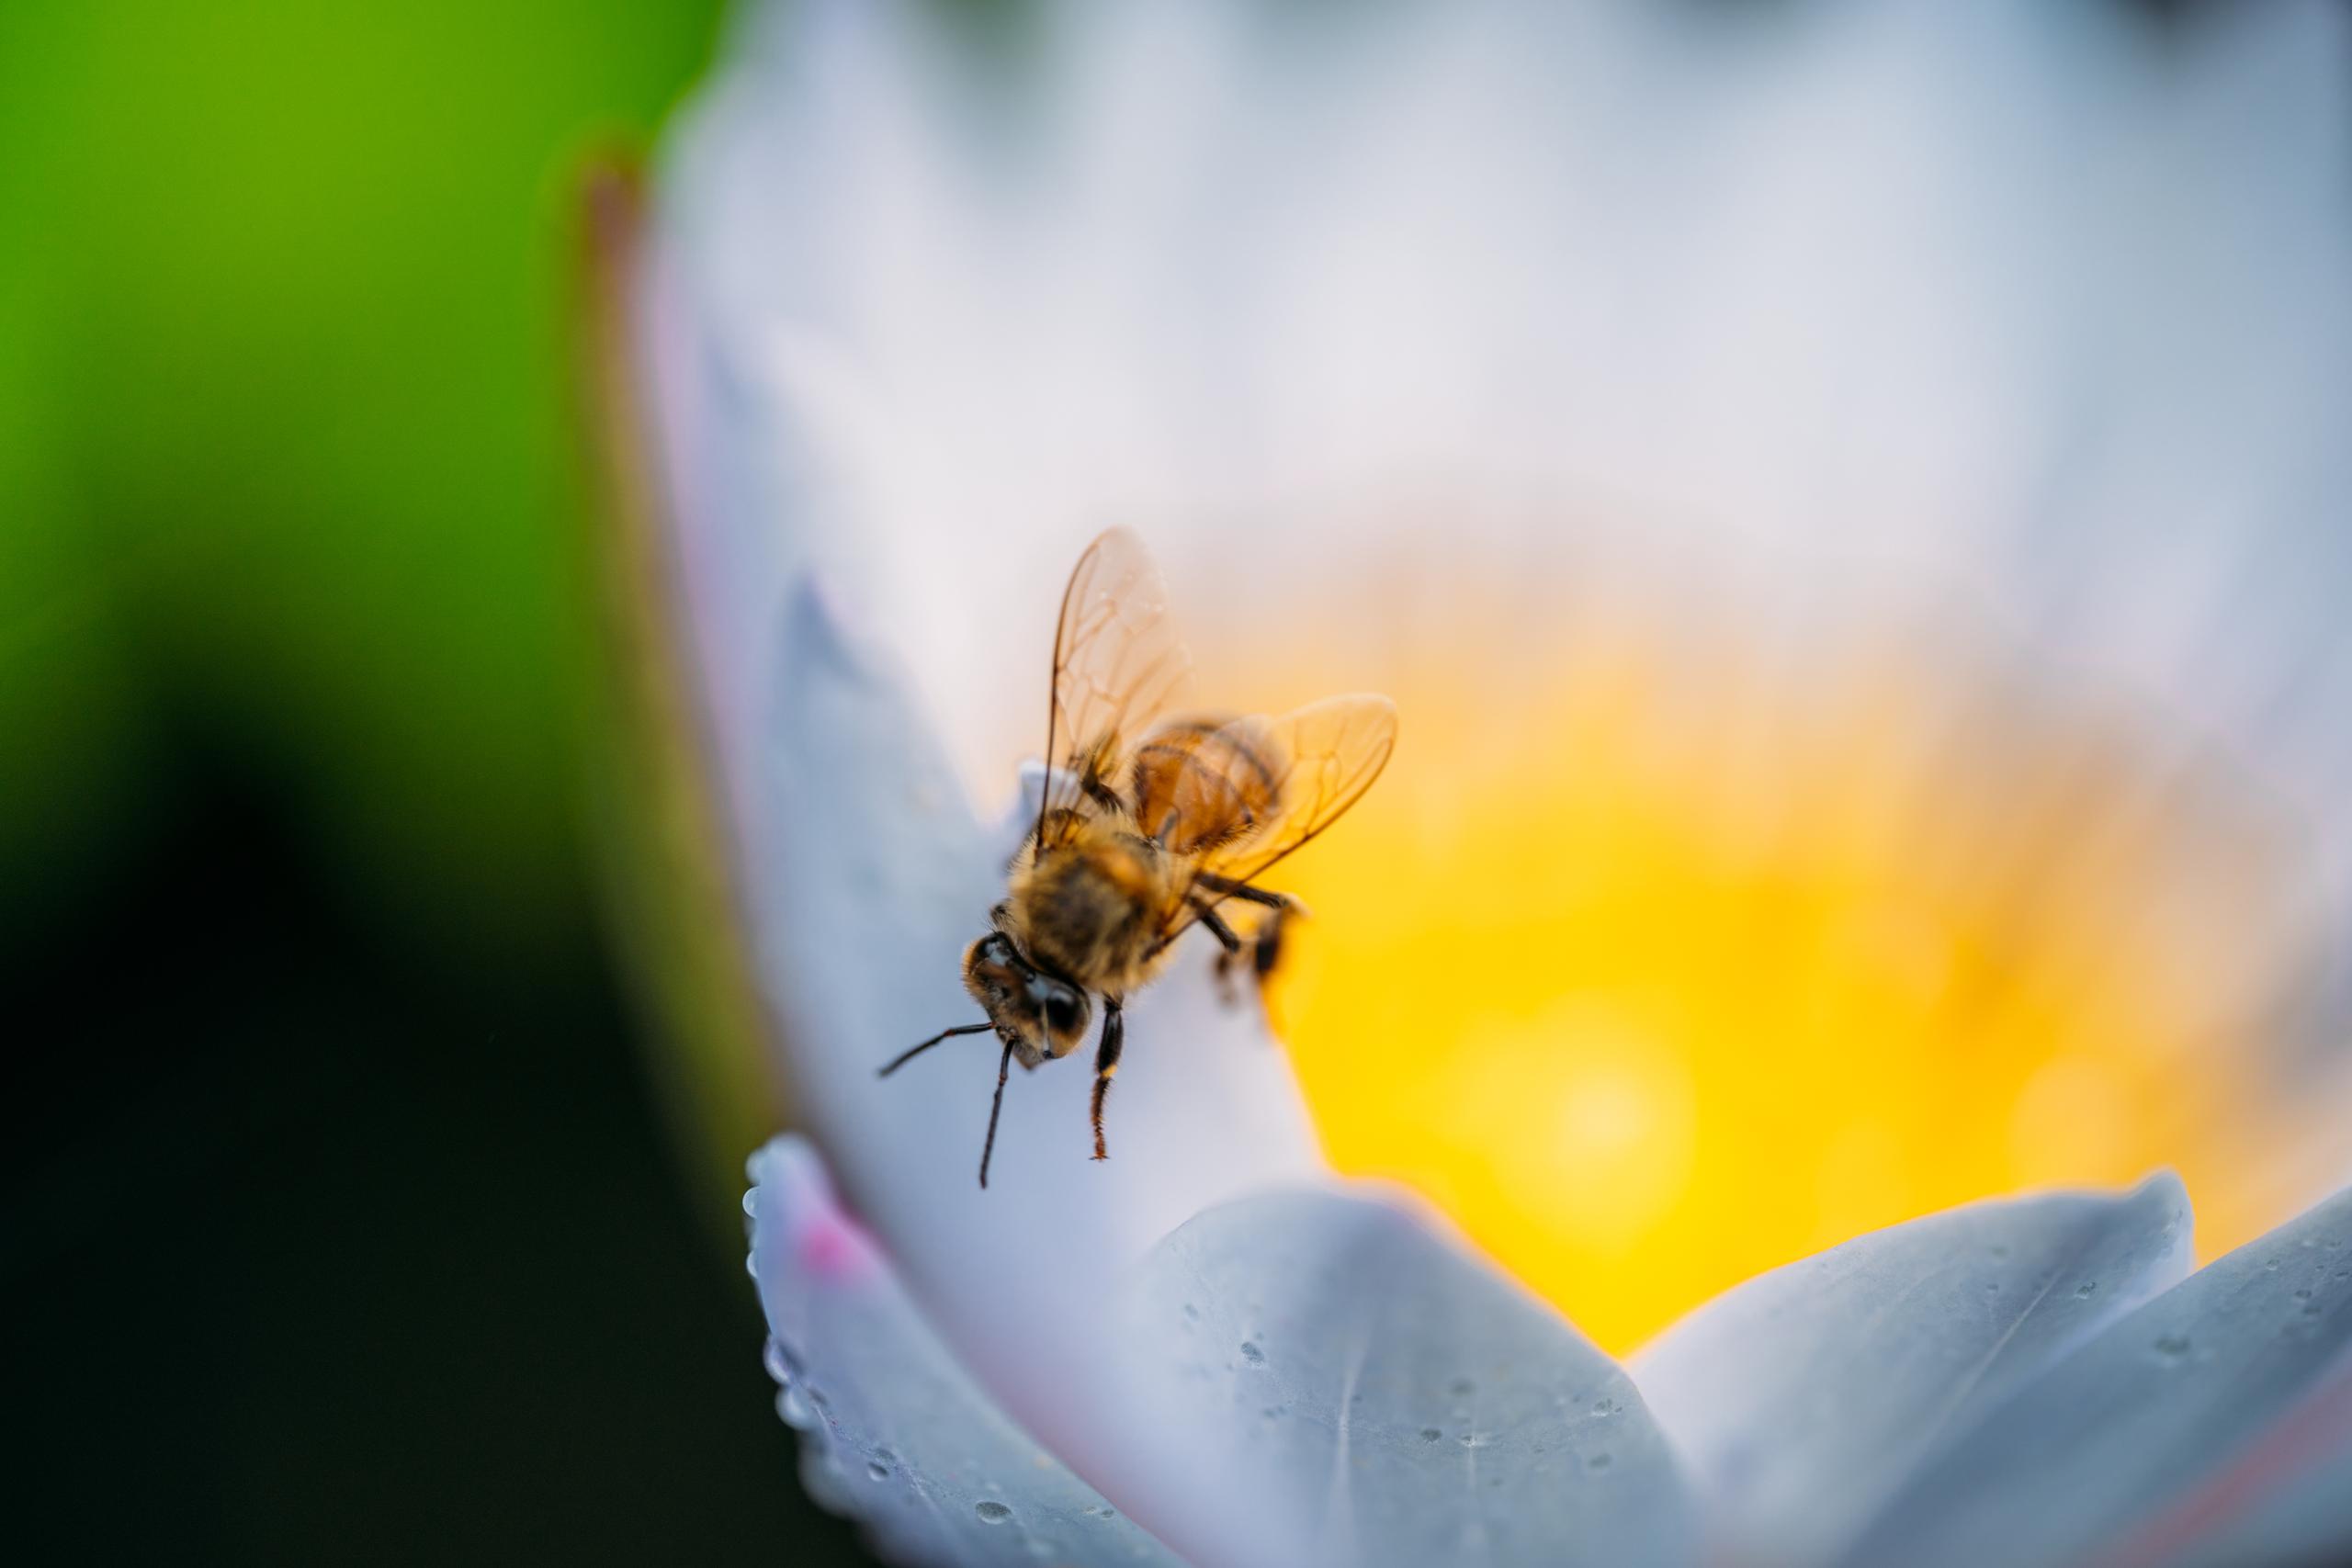 La organización sin fines de lucro The Bee Cause Project, con sede en Charleston, Carolina del Sur, en asociación con Para La Naturaleza y Be a Bee han creado  un santuario de abejas en Manatí, que se inaugurará formalmente al público a finales de este mes.